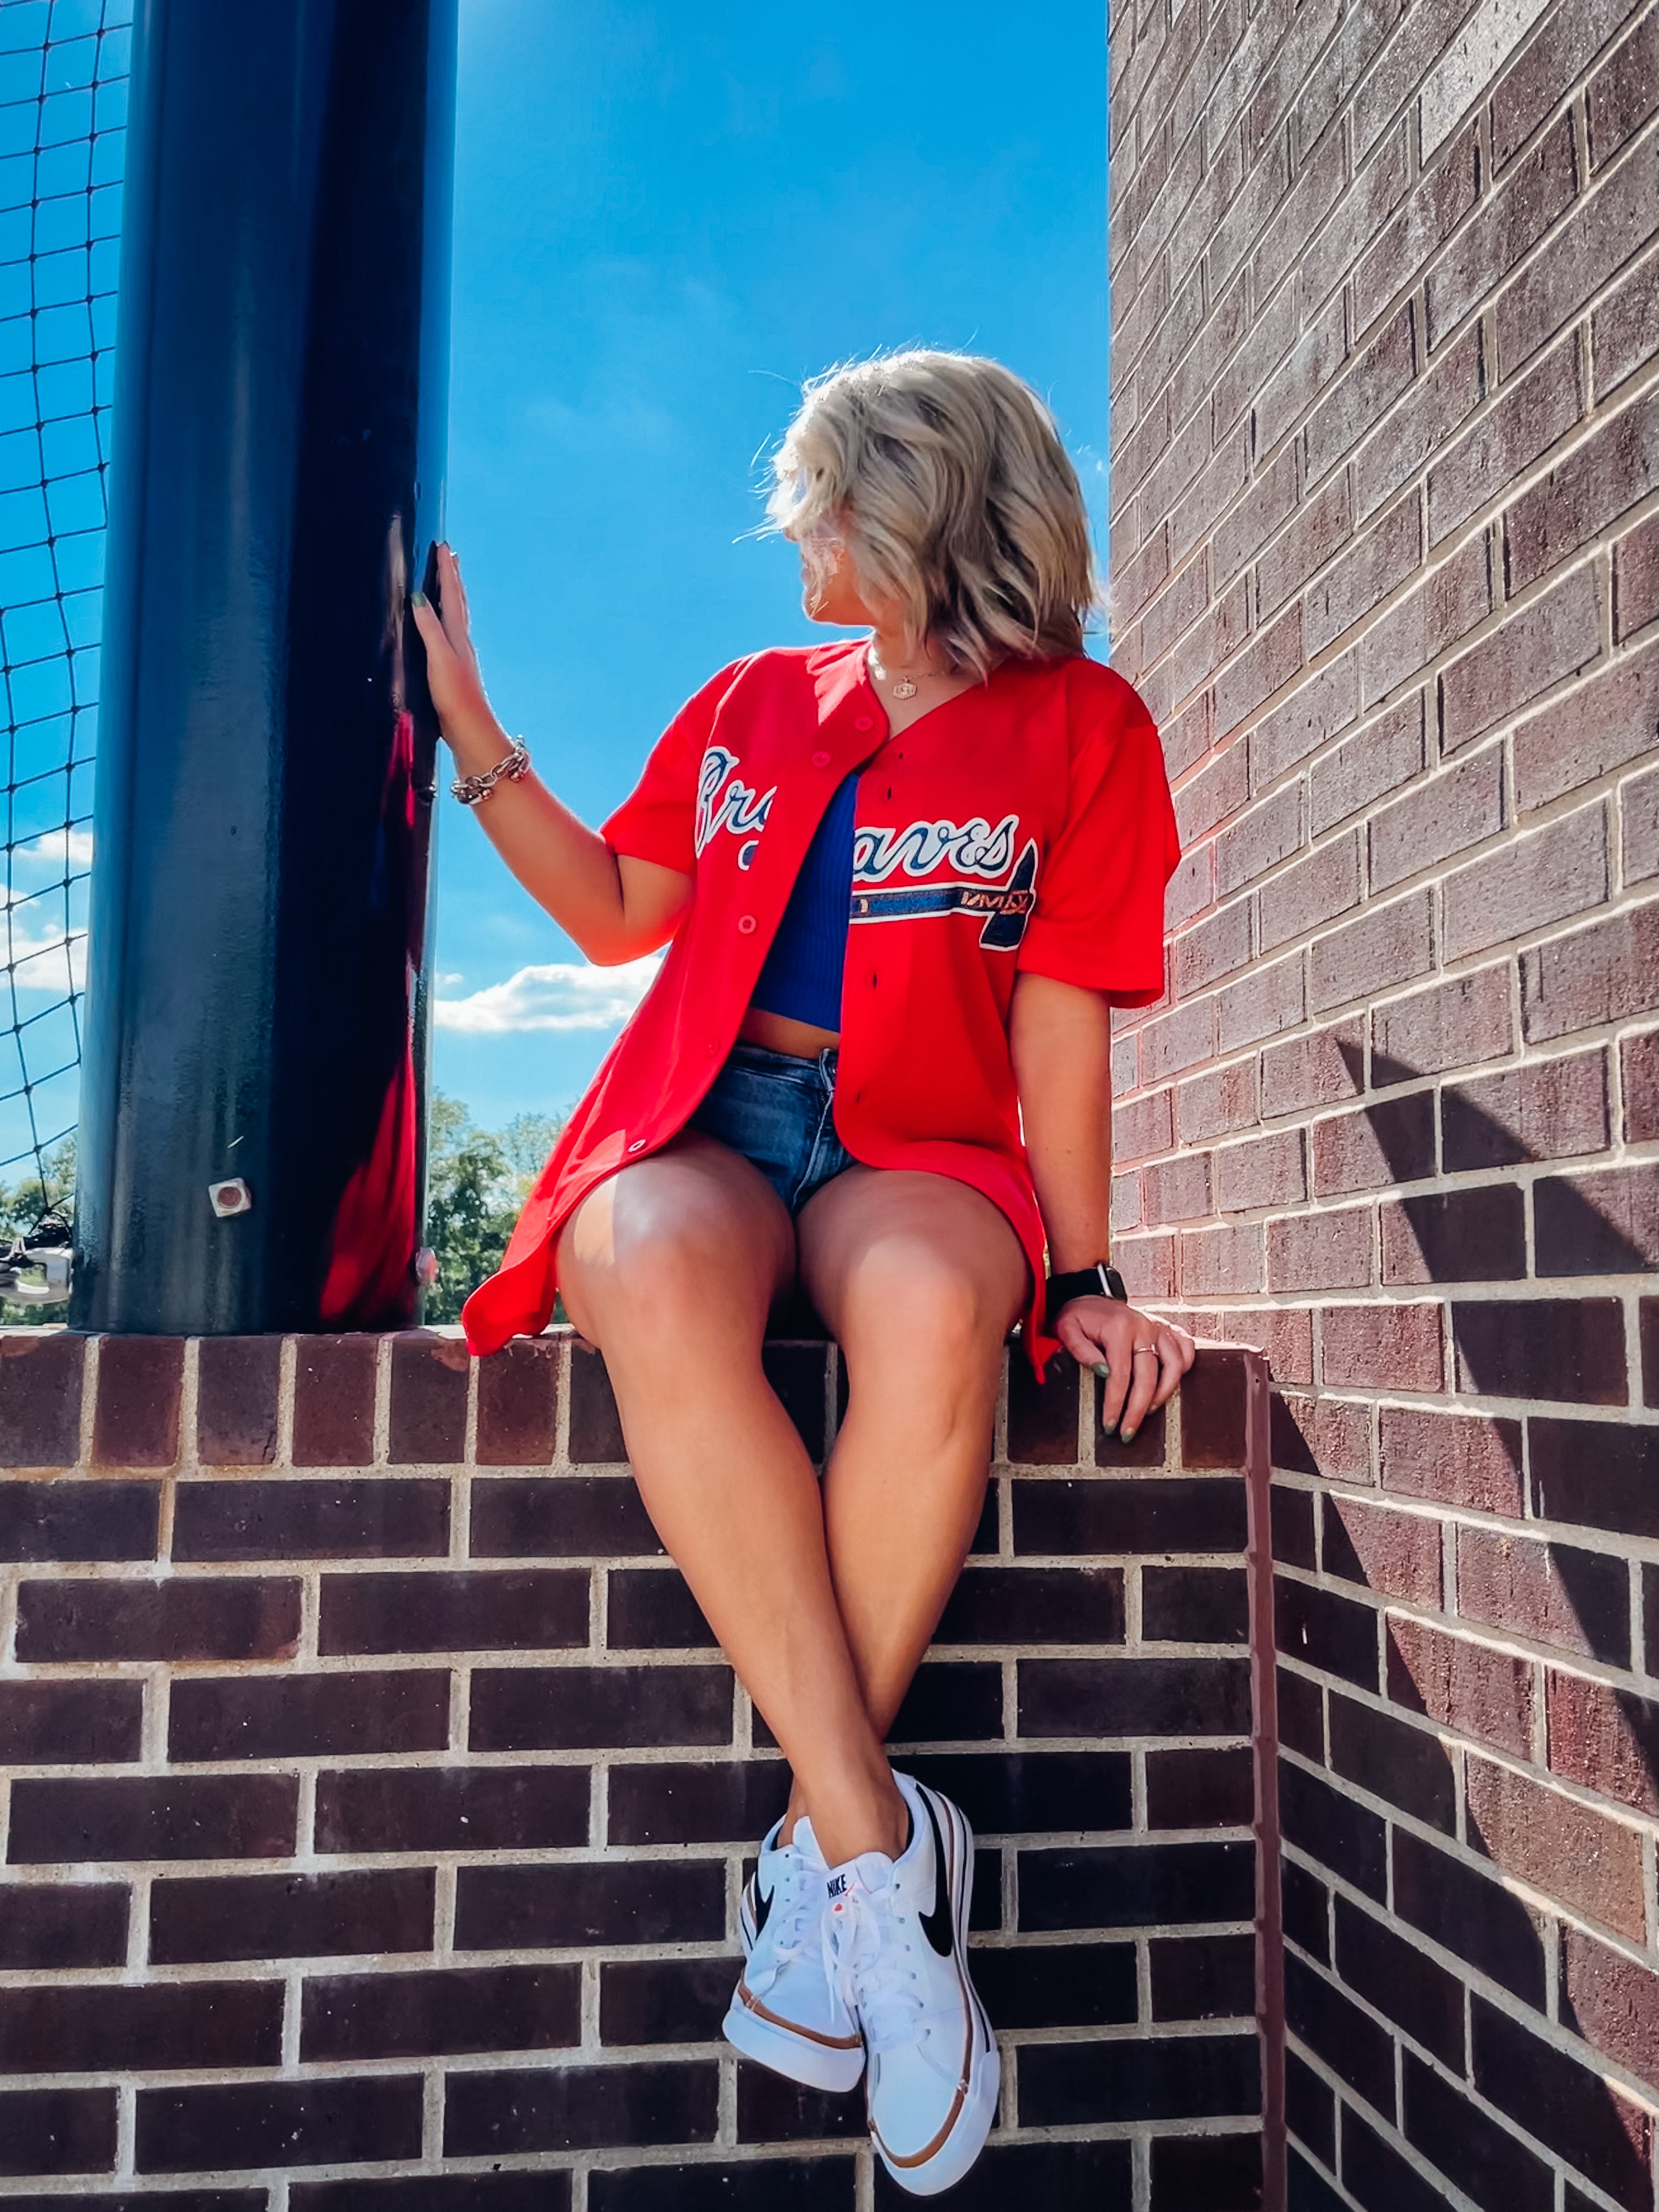 Atlanta Braves Inspired Baseball Jersey: Baseball Fan Gear & Apparel for  Women – LuLu Grace